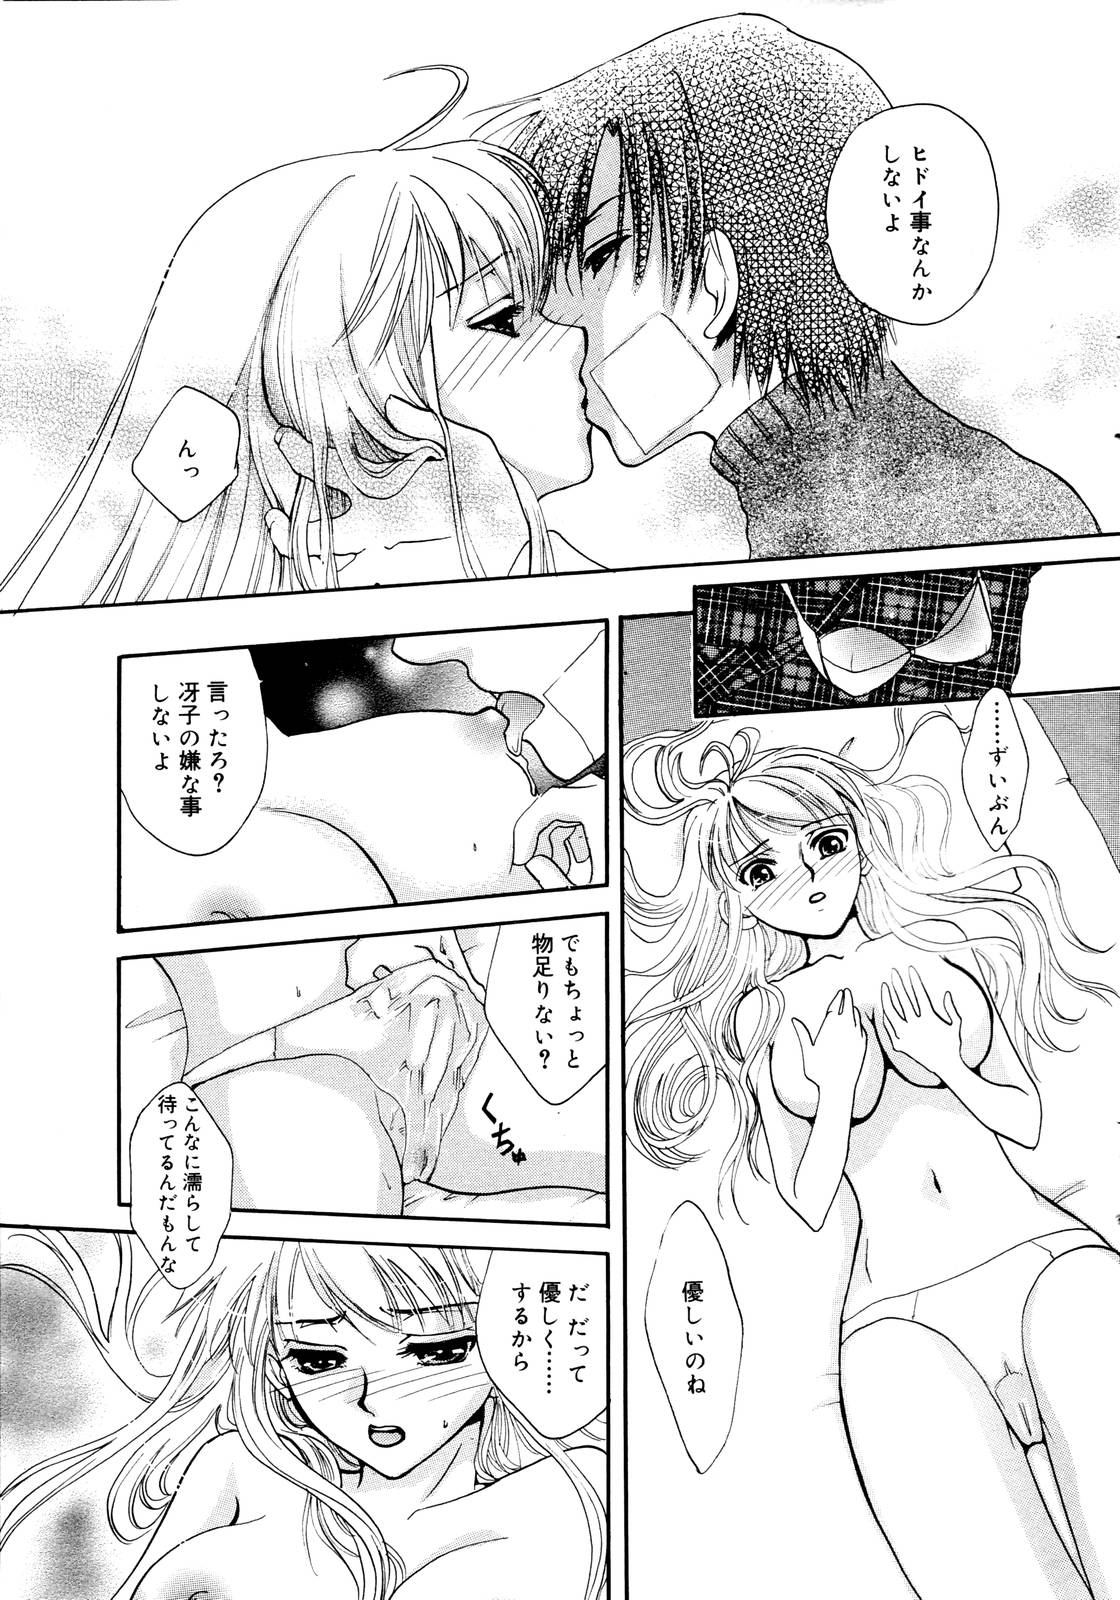 Manga Bangaichi 2006-01 page 15 full